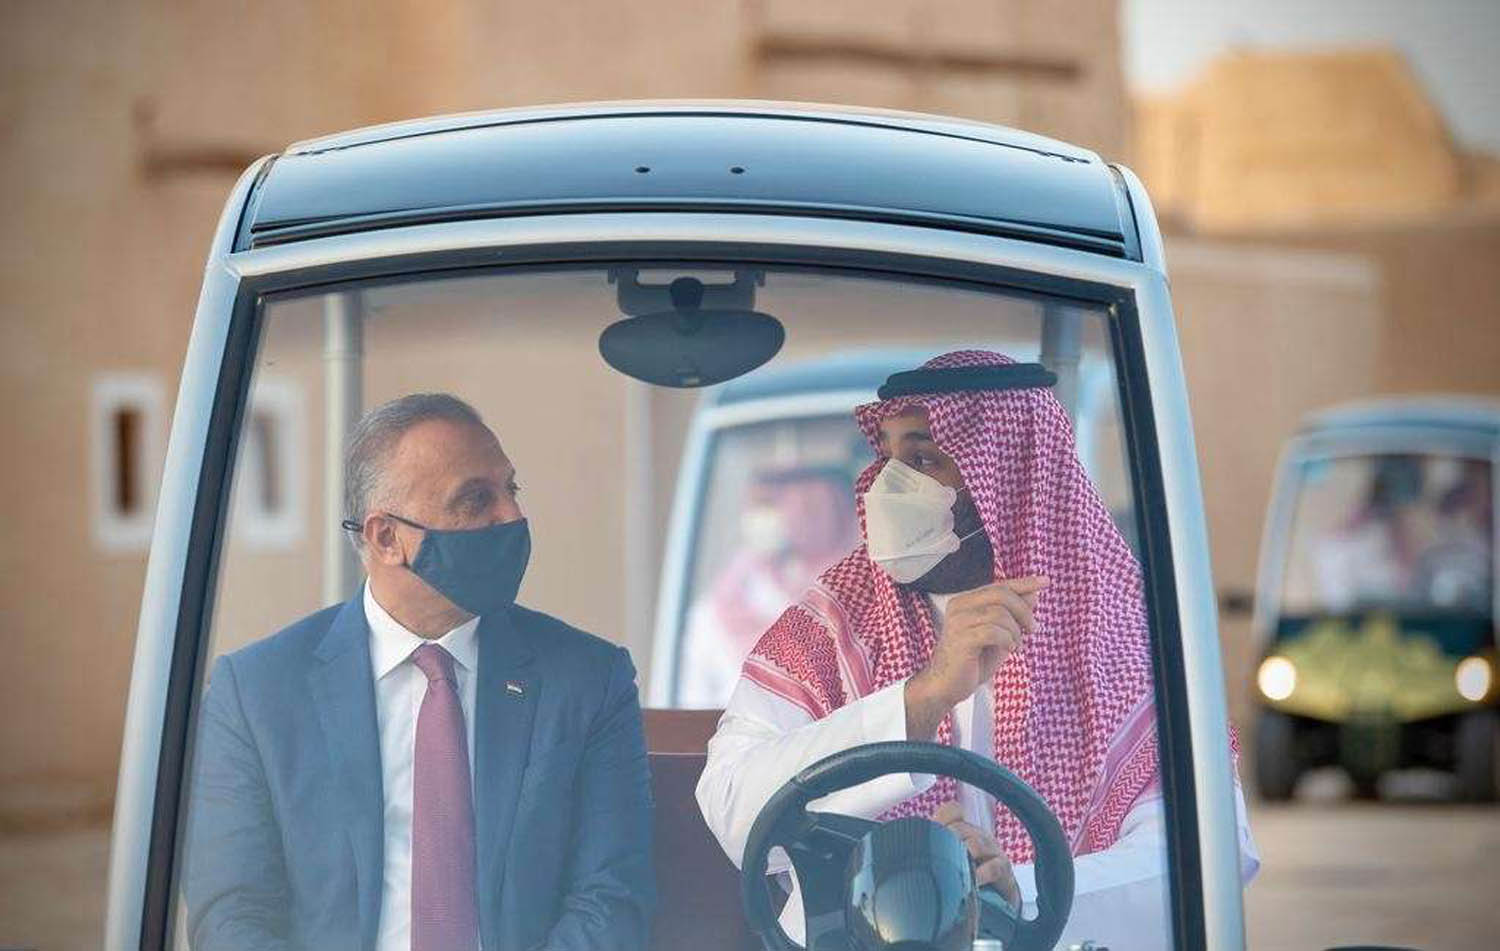 ولي العهد السعودي الأمير محمد بن سلمان ورئيس الوزراء العراقي مصطفى الكاظمي